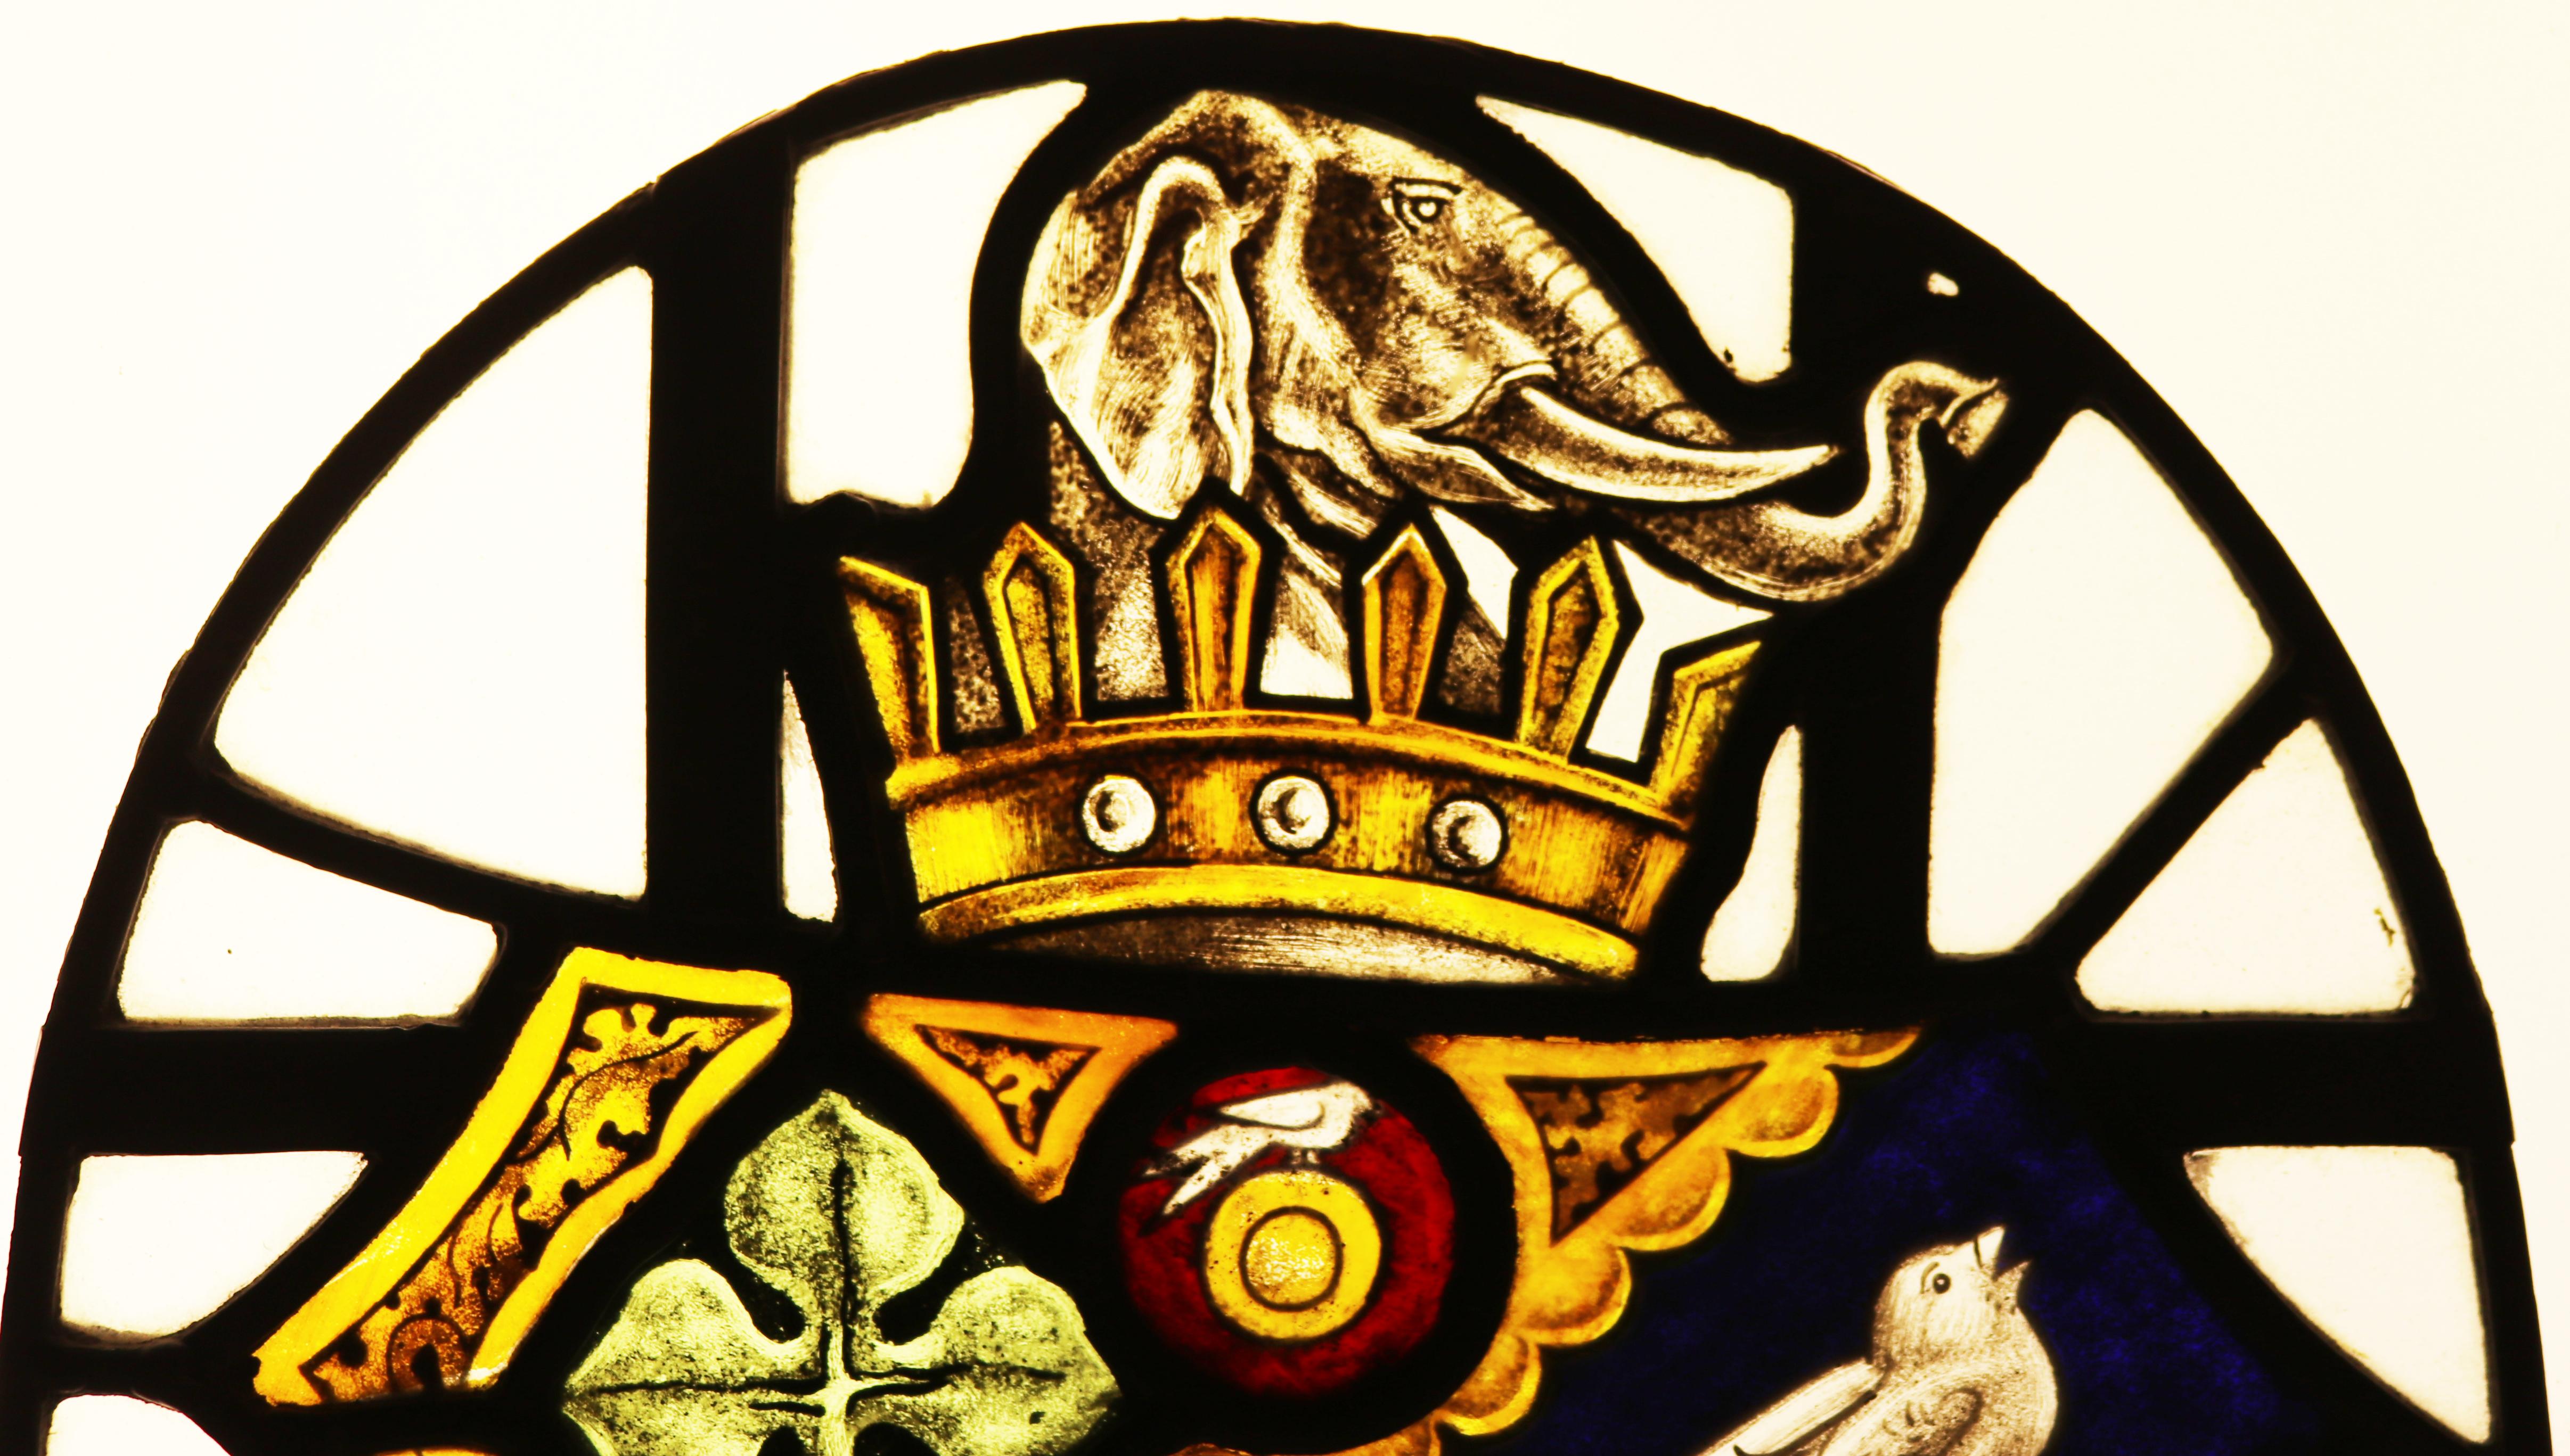 Un panneau de vitrail représentant un blason, avec une couronne, un éléphant, des oiseaux chanteurs et du trèfle. A l'origine, il était monté sur une porte.